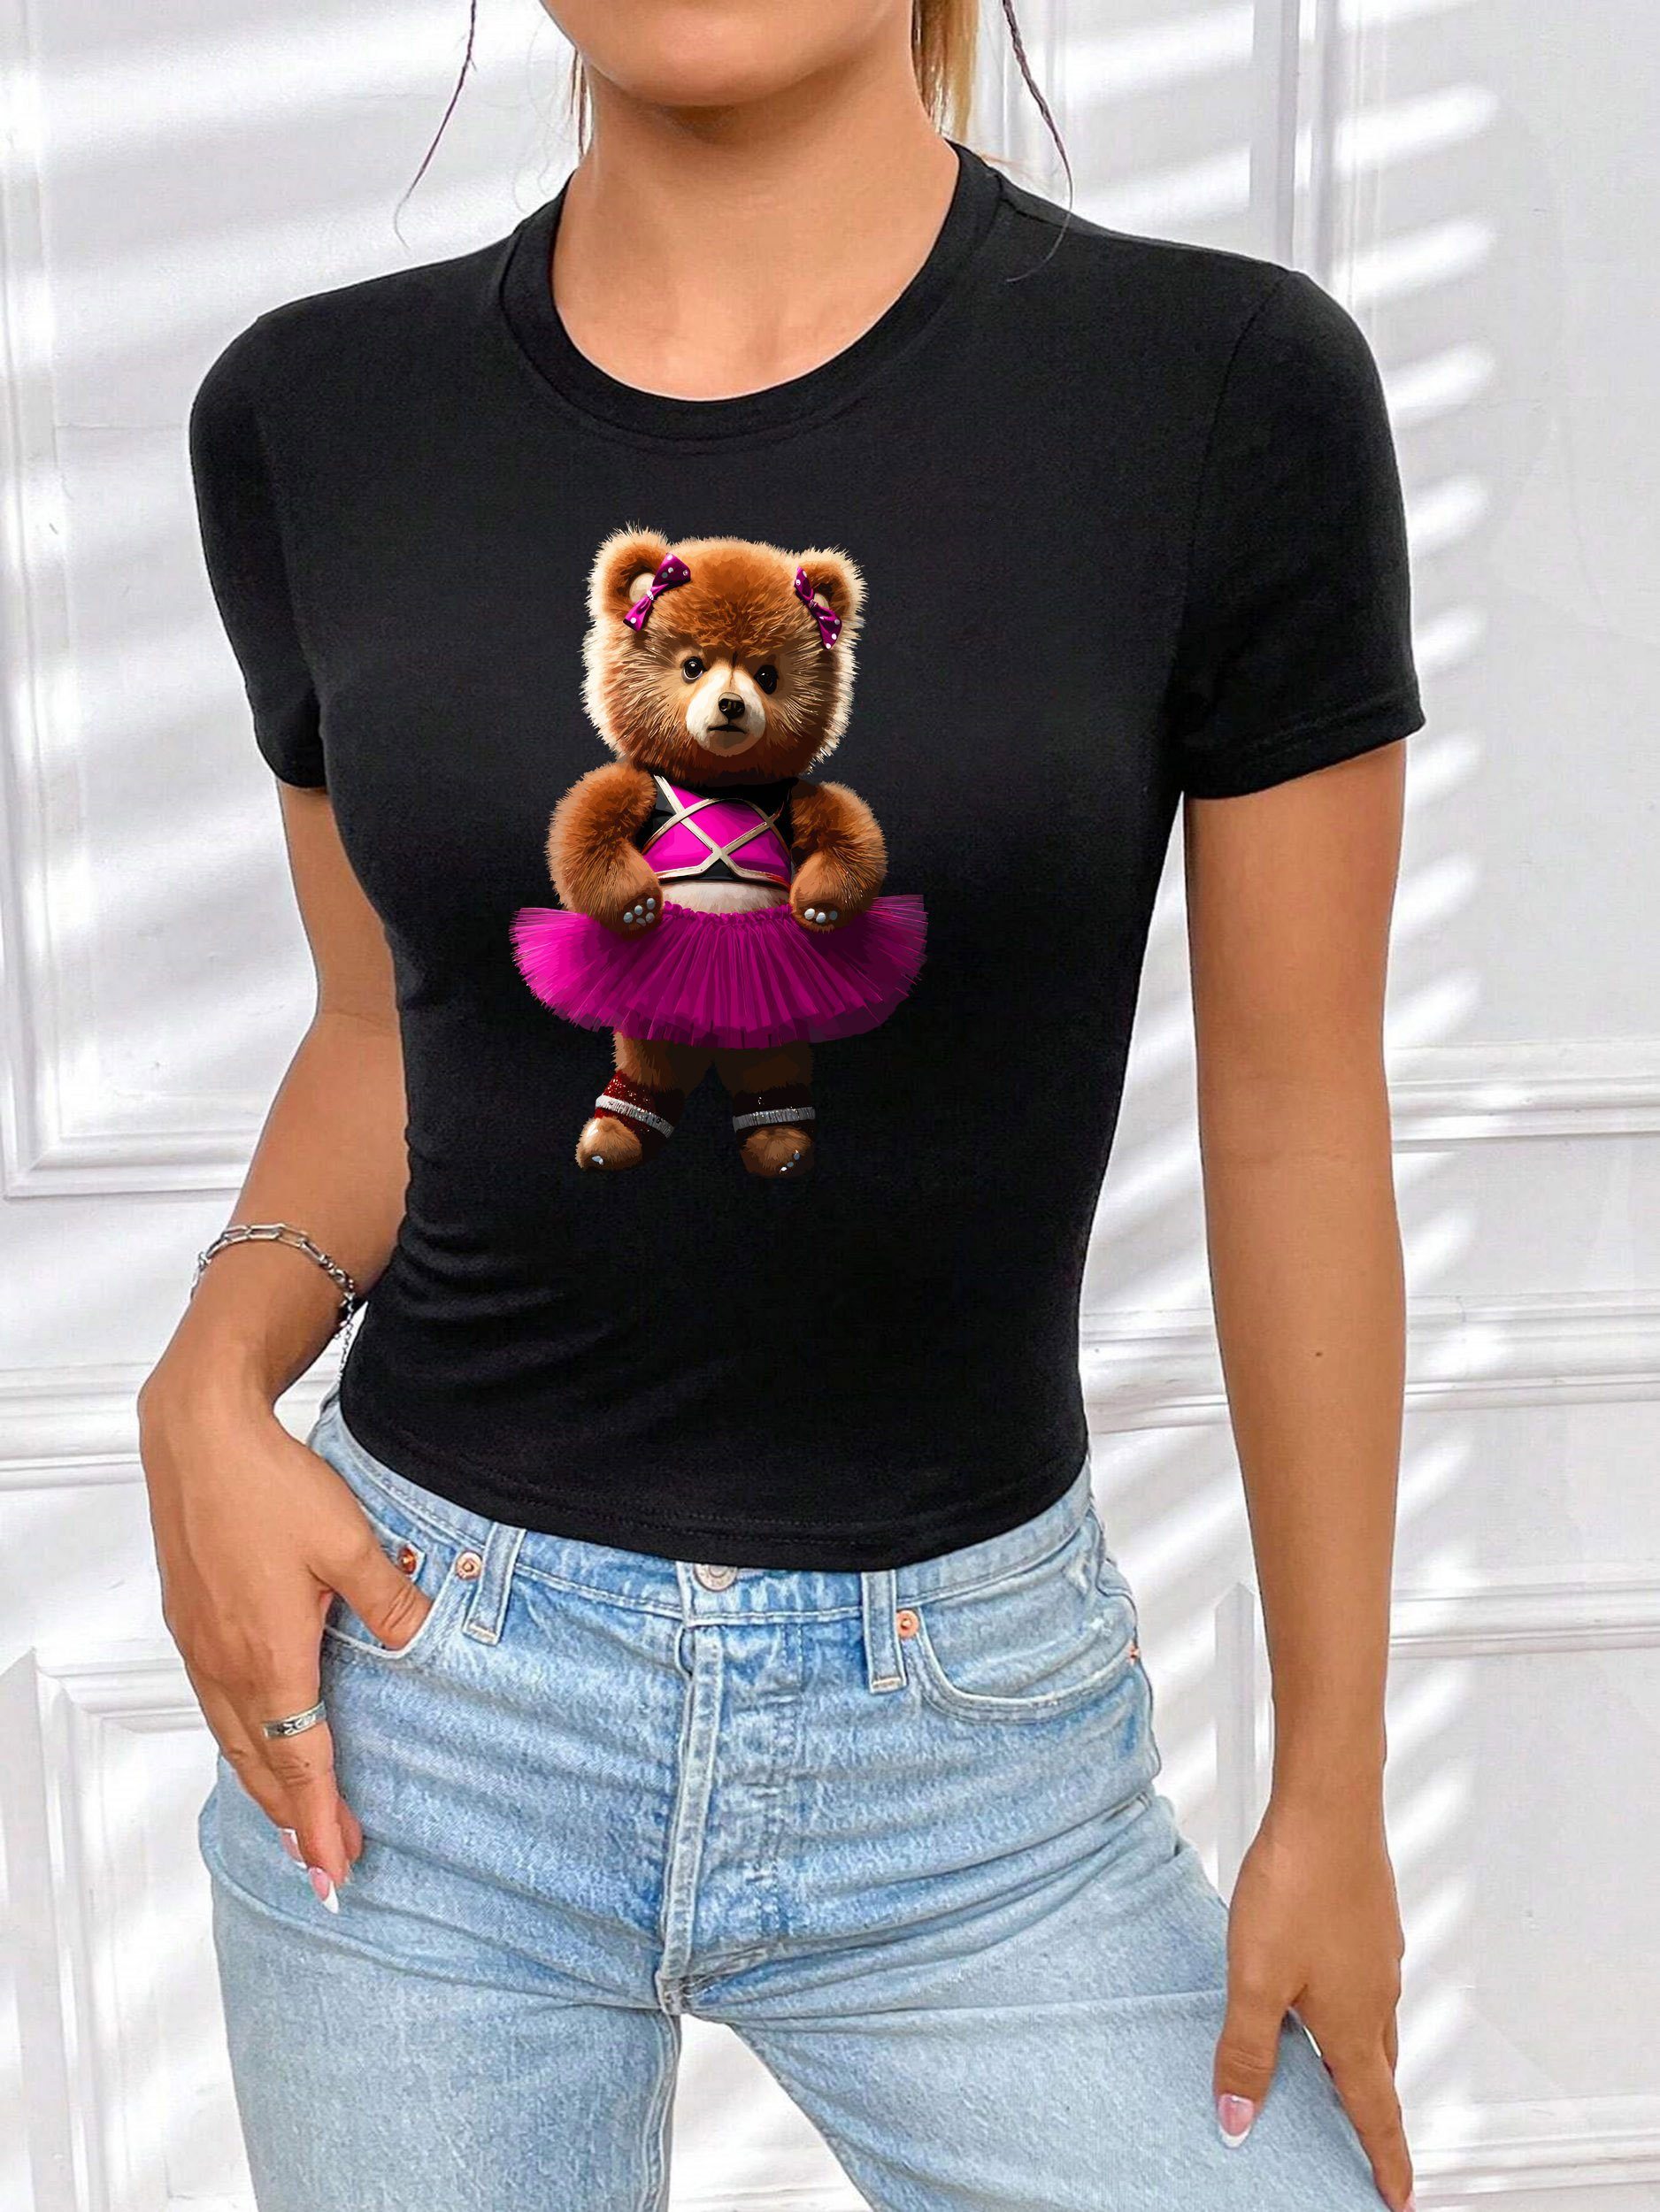 Top in Schwarz-Pink Rundhals kurzarm Damen Baumwolle Freizeit Print-Shirt aus RMK "Cat Shirt Katze" Unifarbe,